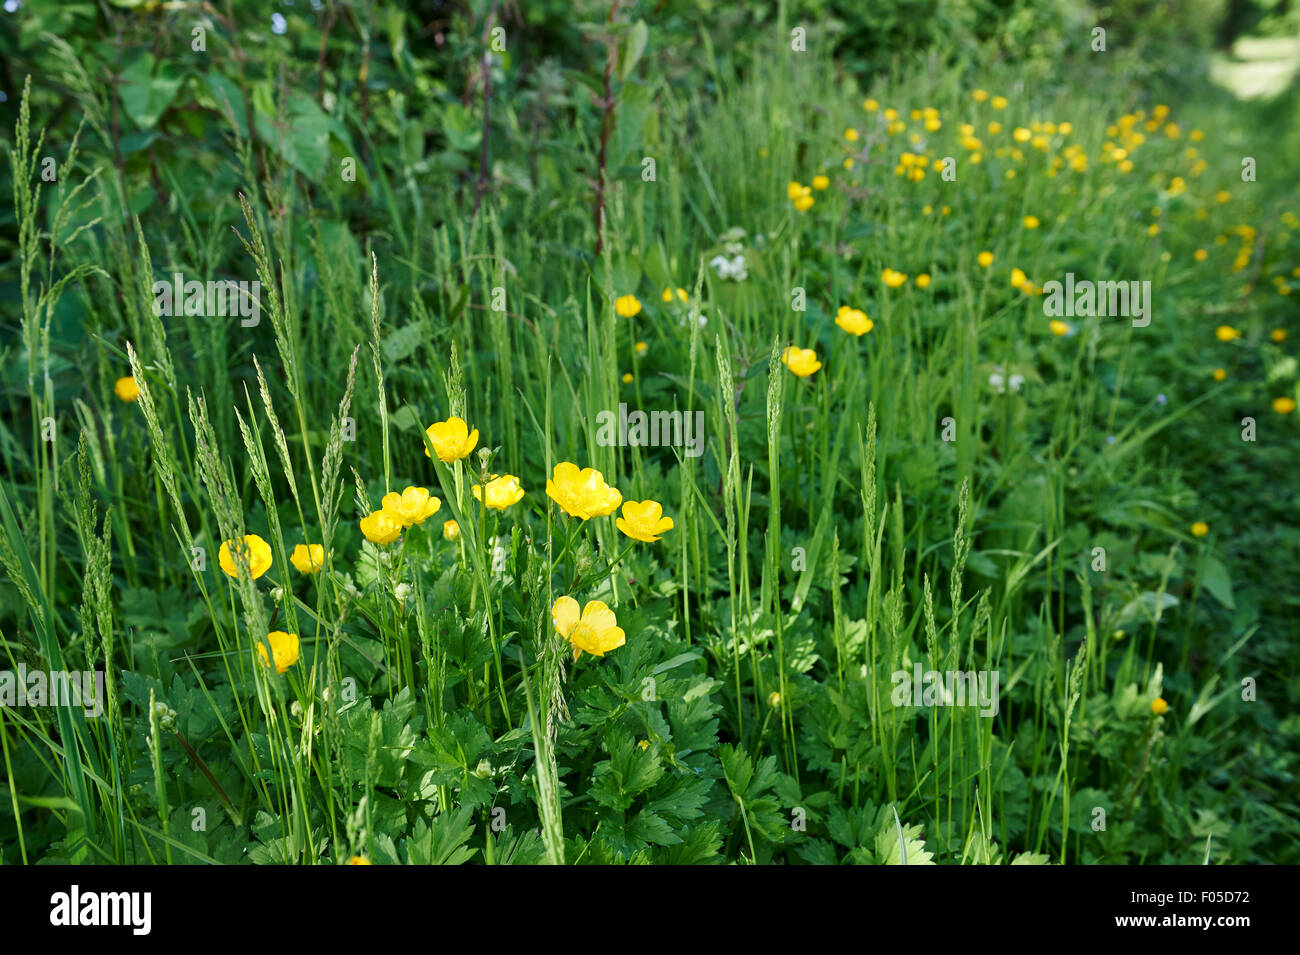 Landschaftsschutzgebiet Lebensraum auf landwirtschaftlichen Flächen mit einheimischen Pflanzen Gräser und Blumen knolligen Hahnenfuß (Ranunculus Bulbosus). Stockfoto